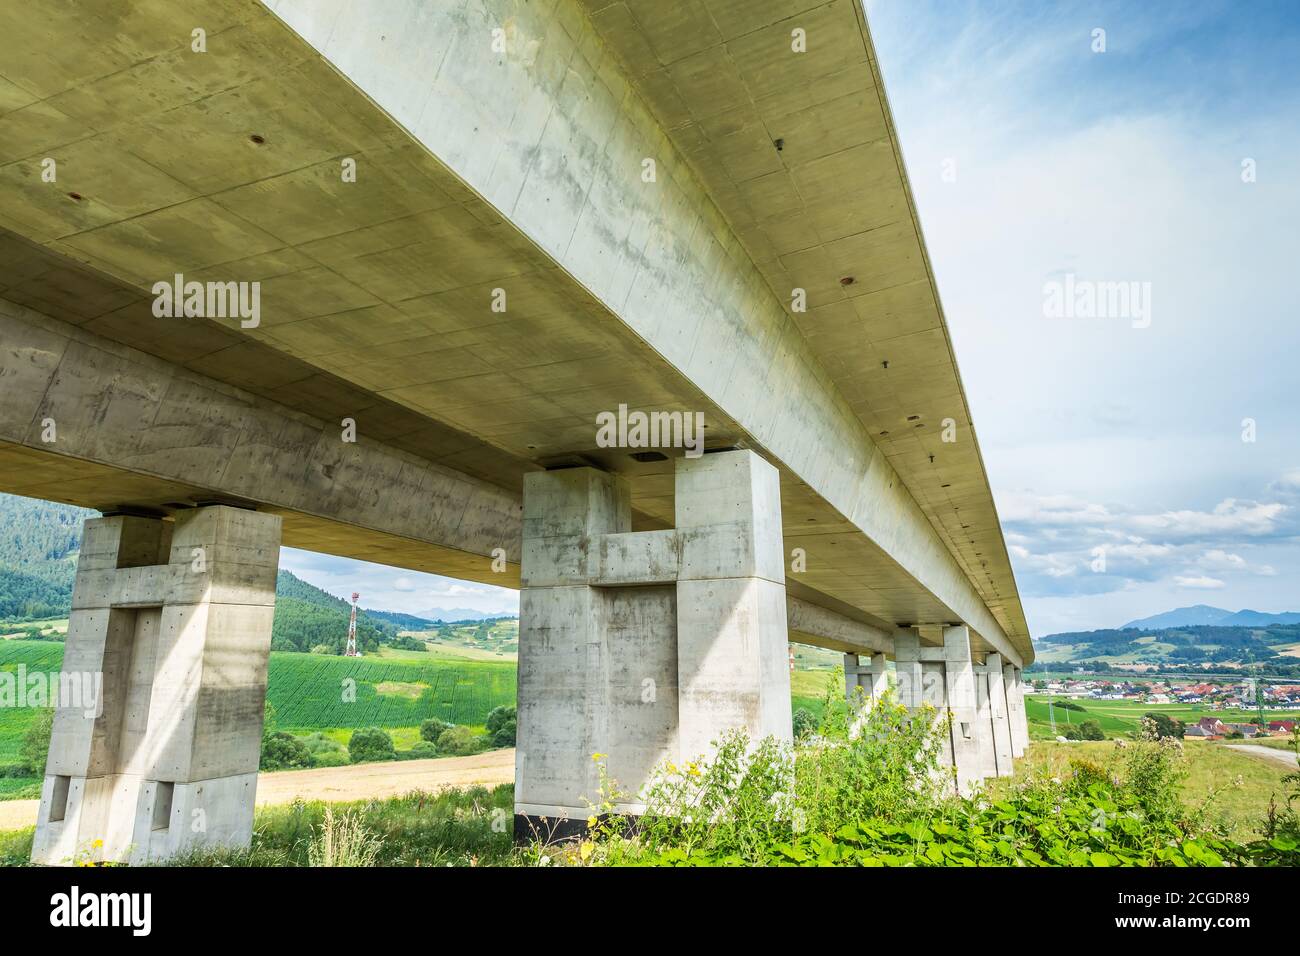 Bau der neuen Autobahn, Abschnitt der Autobahn und Autobahn Ausfahrt Rampe, Slowakei. Stockfoto